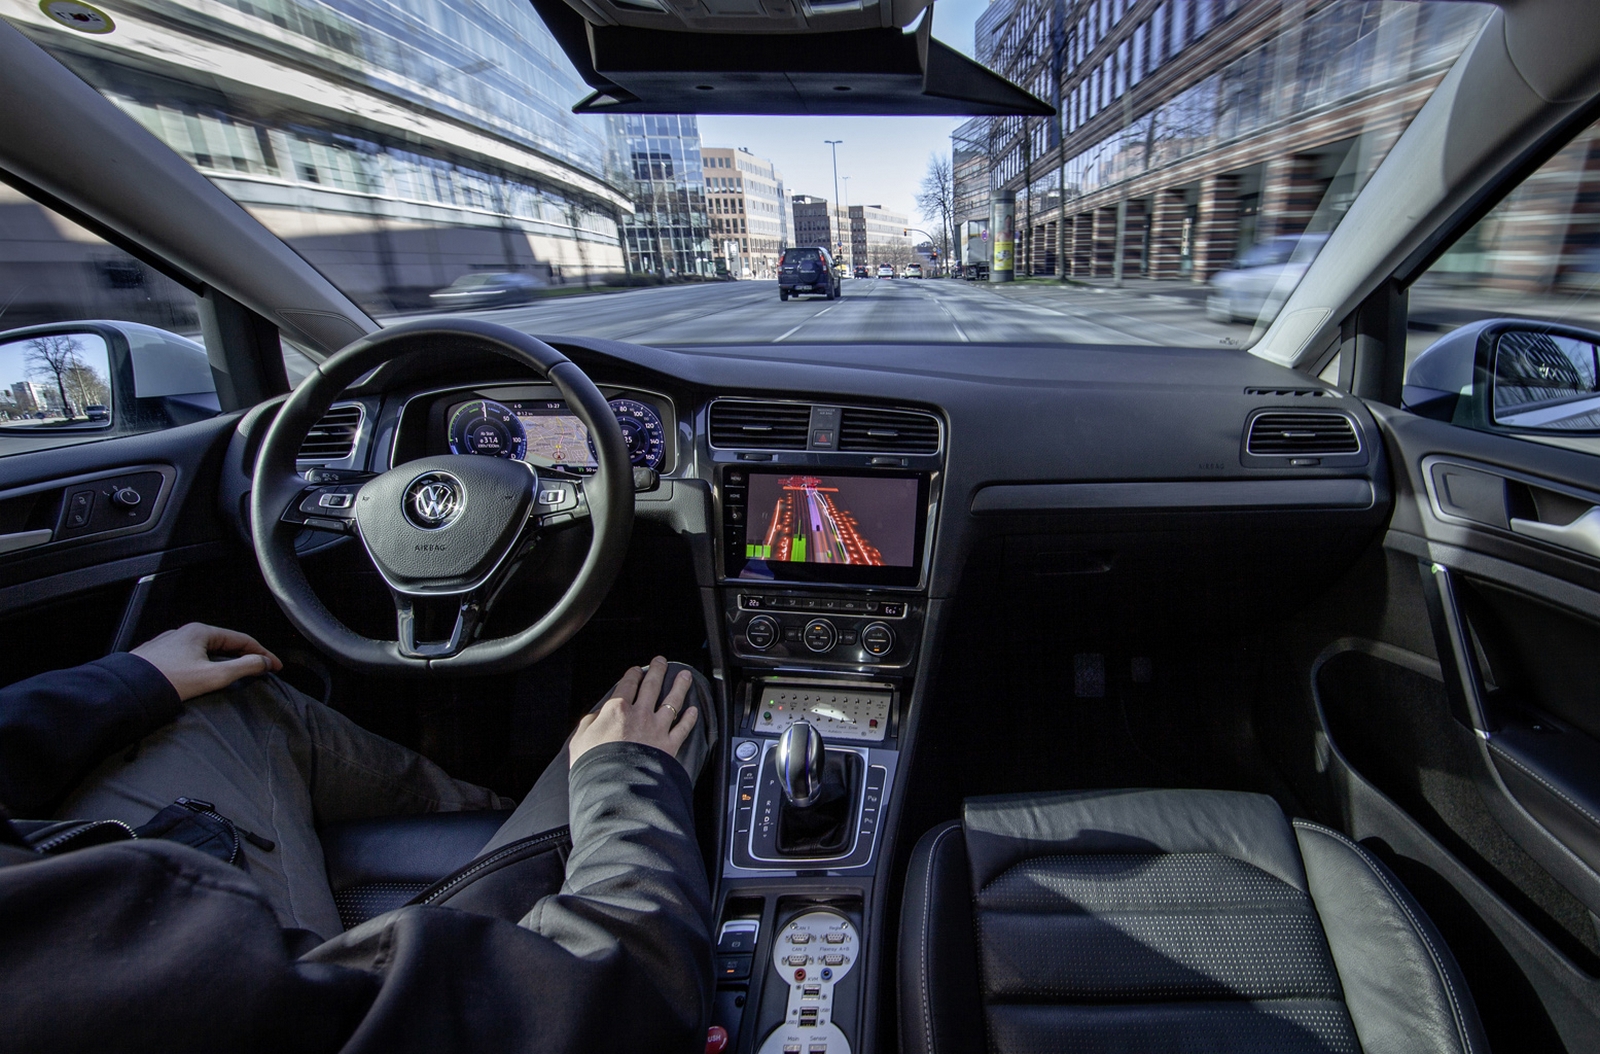 Un système de conduite autonome de niveau 4 est capable de circuler sans présence humaine à bord du véhicule. © Volkswagen